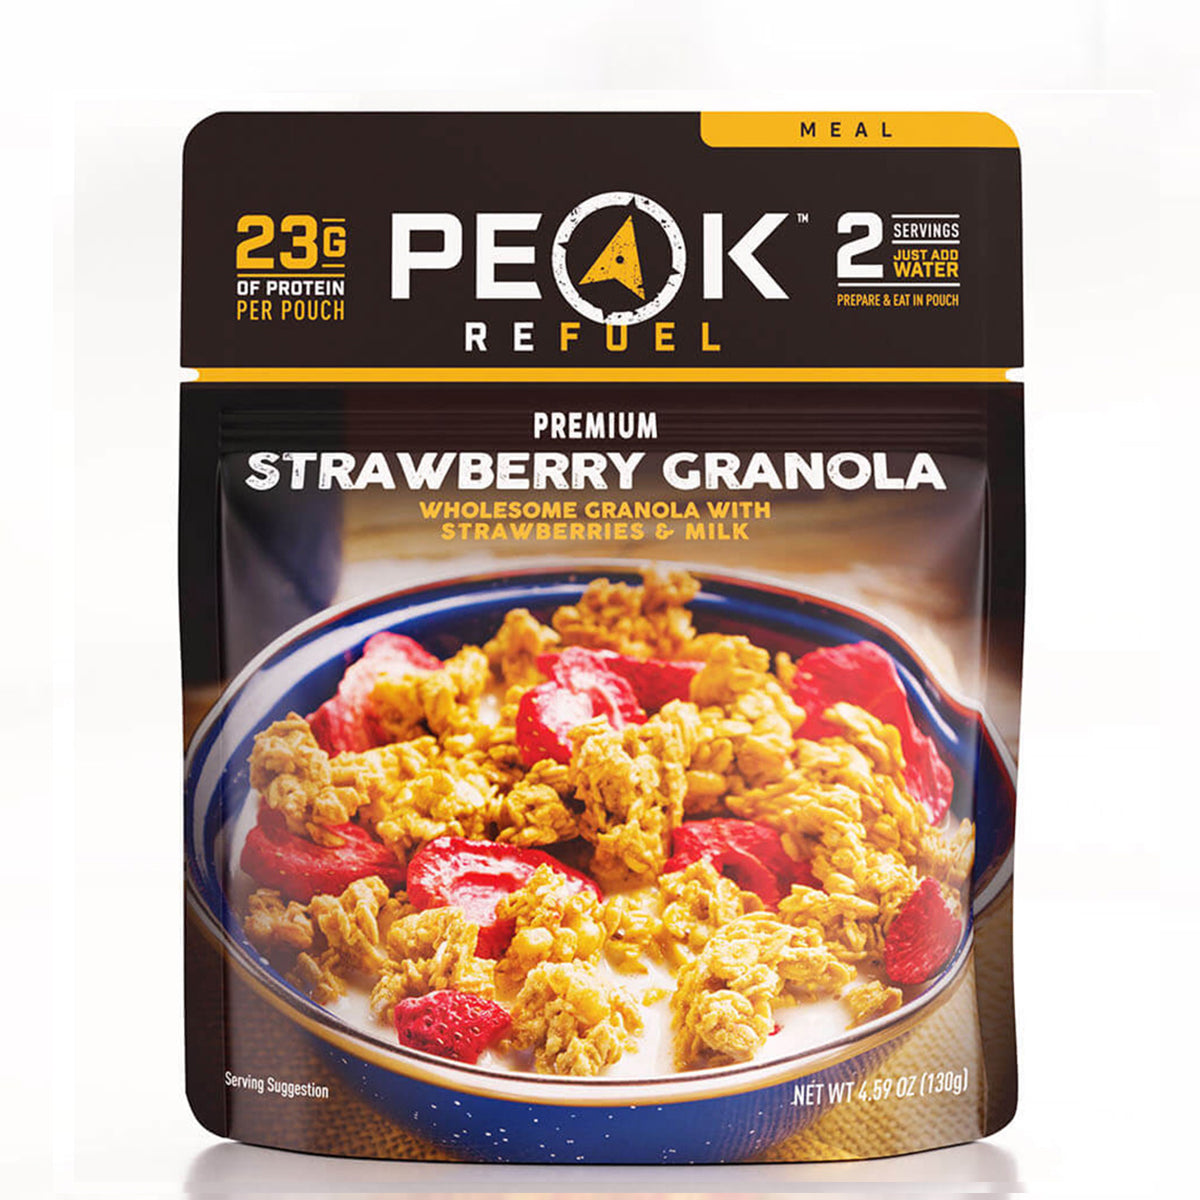 Peak Refuel Strawberry Granola in Peak Refuel Strawberry Granola by Peak Refuel | Camping - goHUNT Shop by GOHUNT | Peak Refuel - GOHUNT Shop